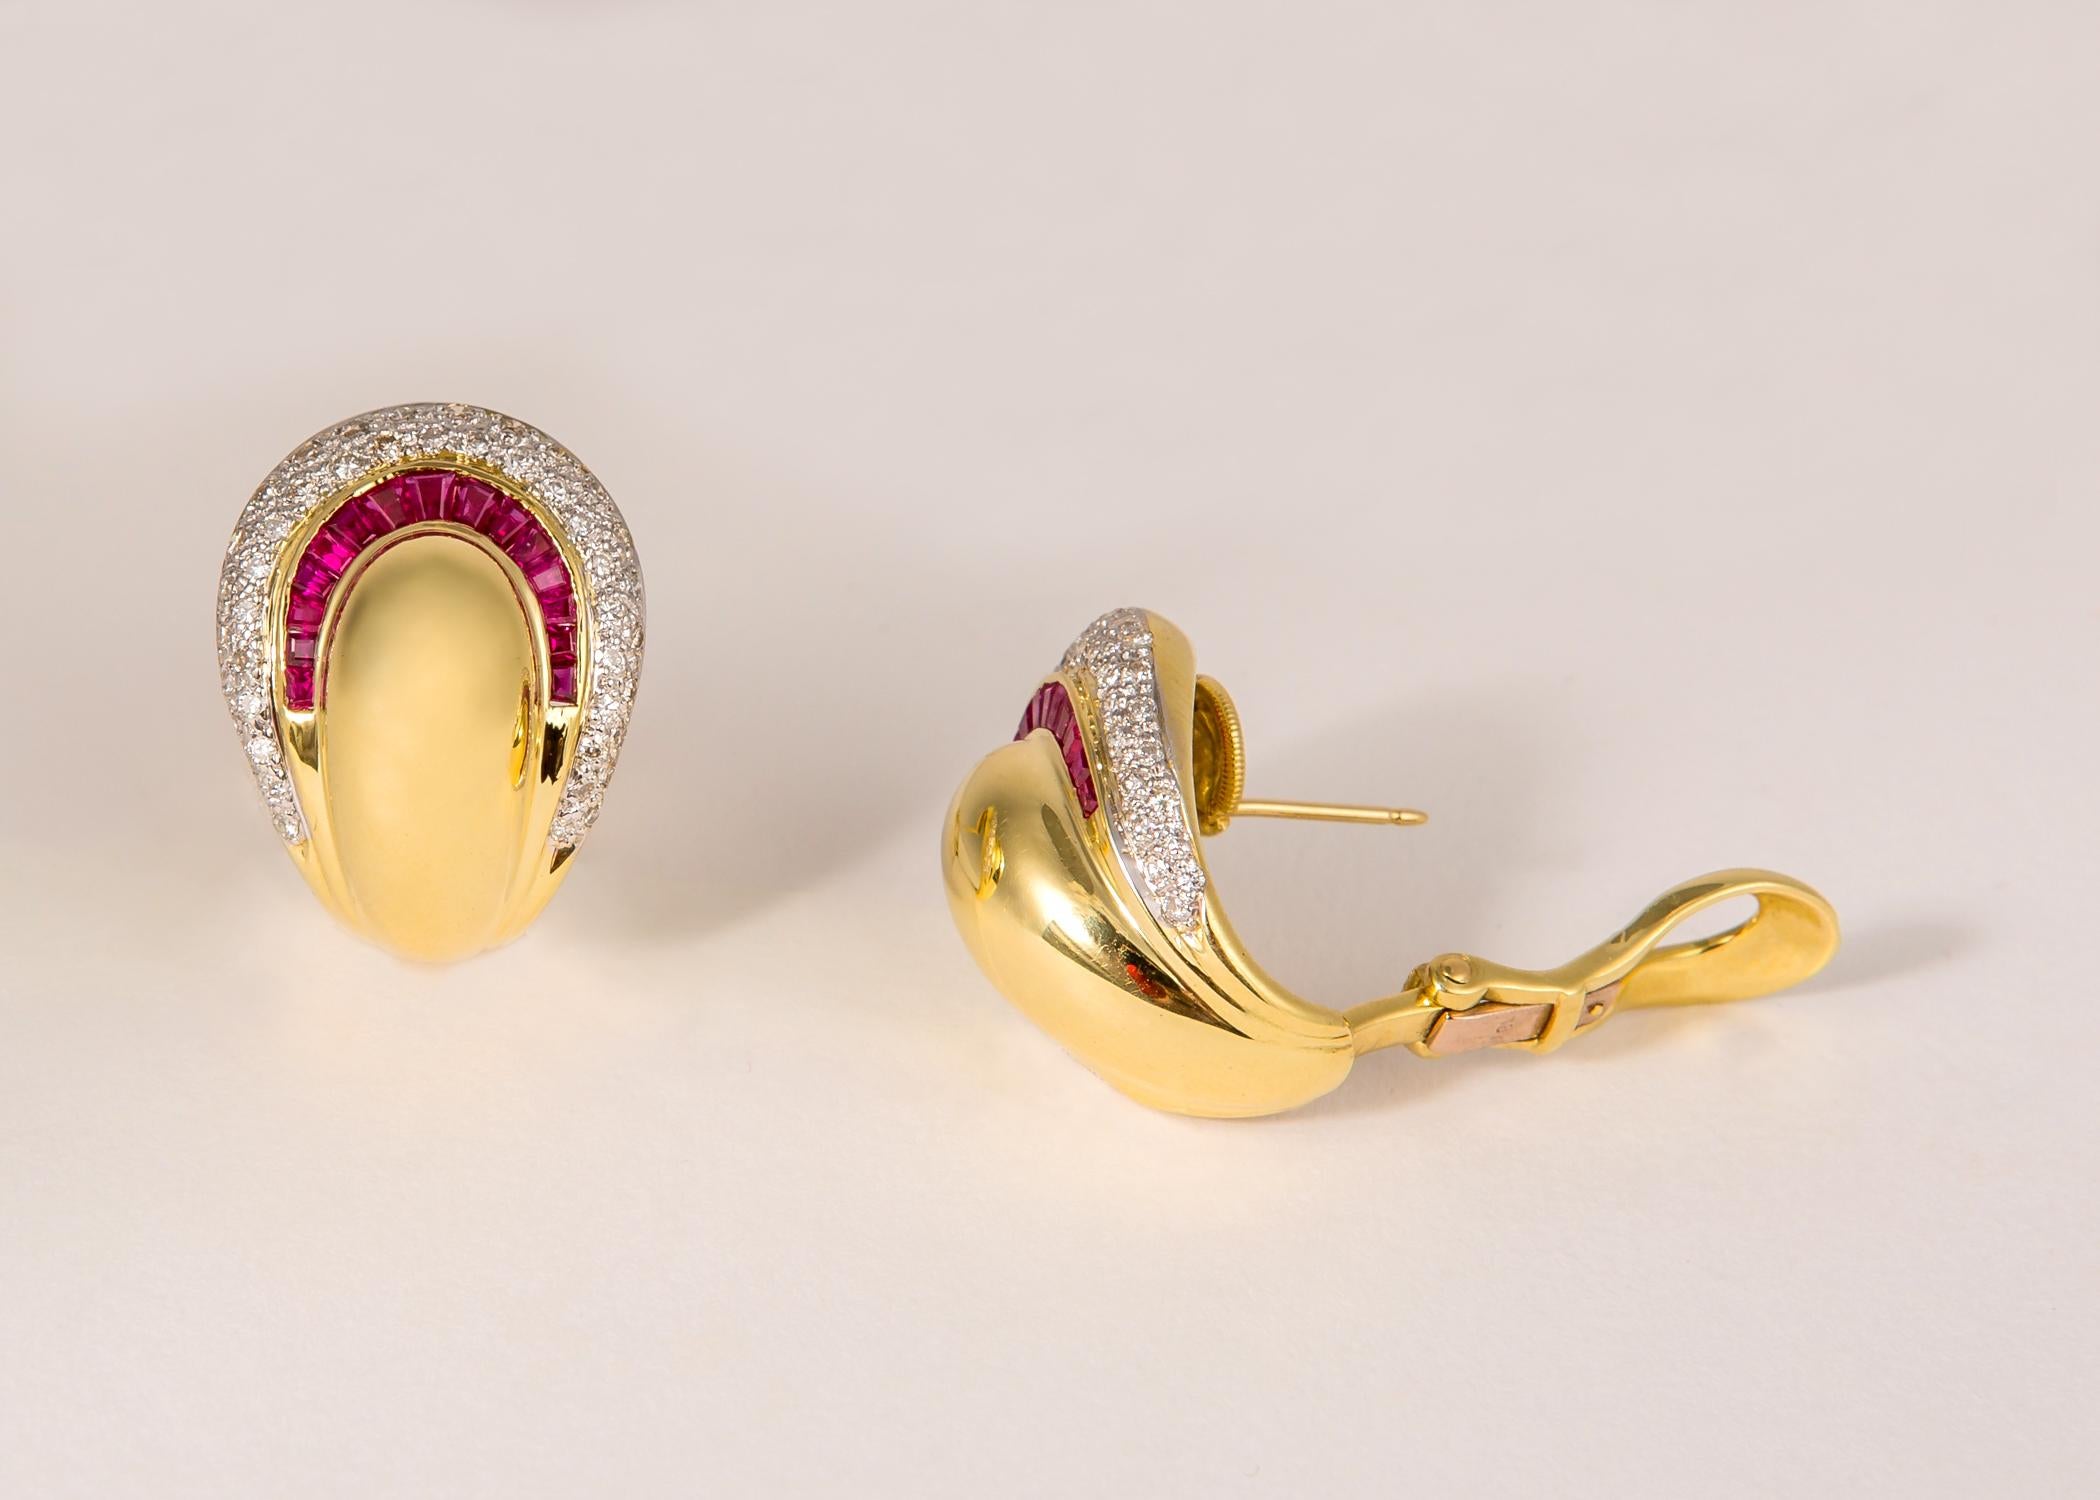 Baguette Cut Elegant Ruby and Diamond Earrings